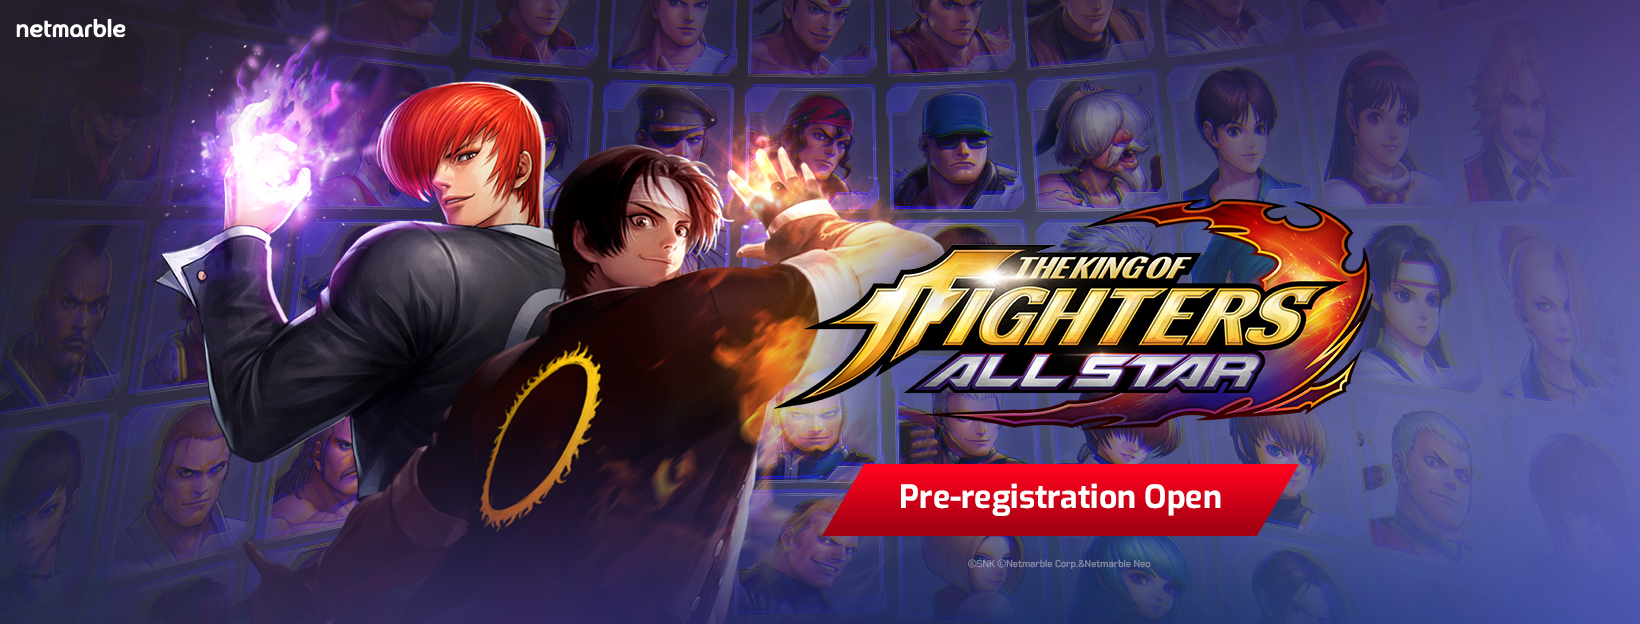 Netmarble’ın Yeni Oyunu King of Fighters Allstar için Ön Kayıtlar Başladı